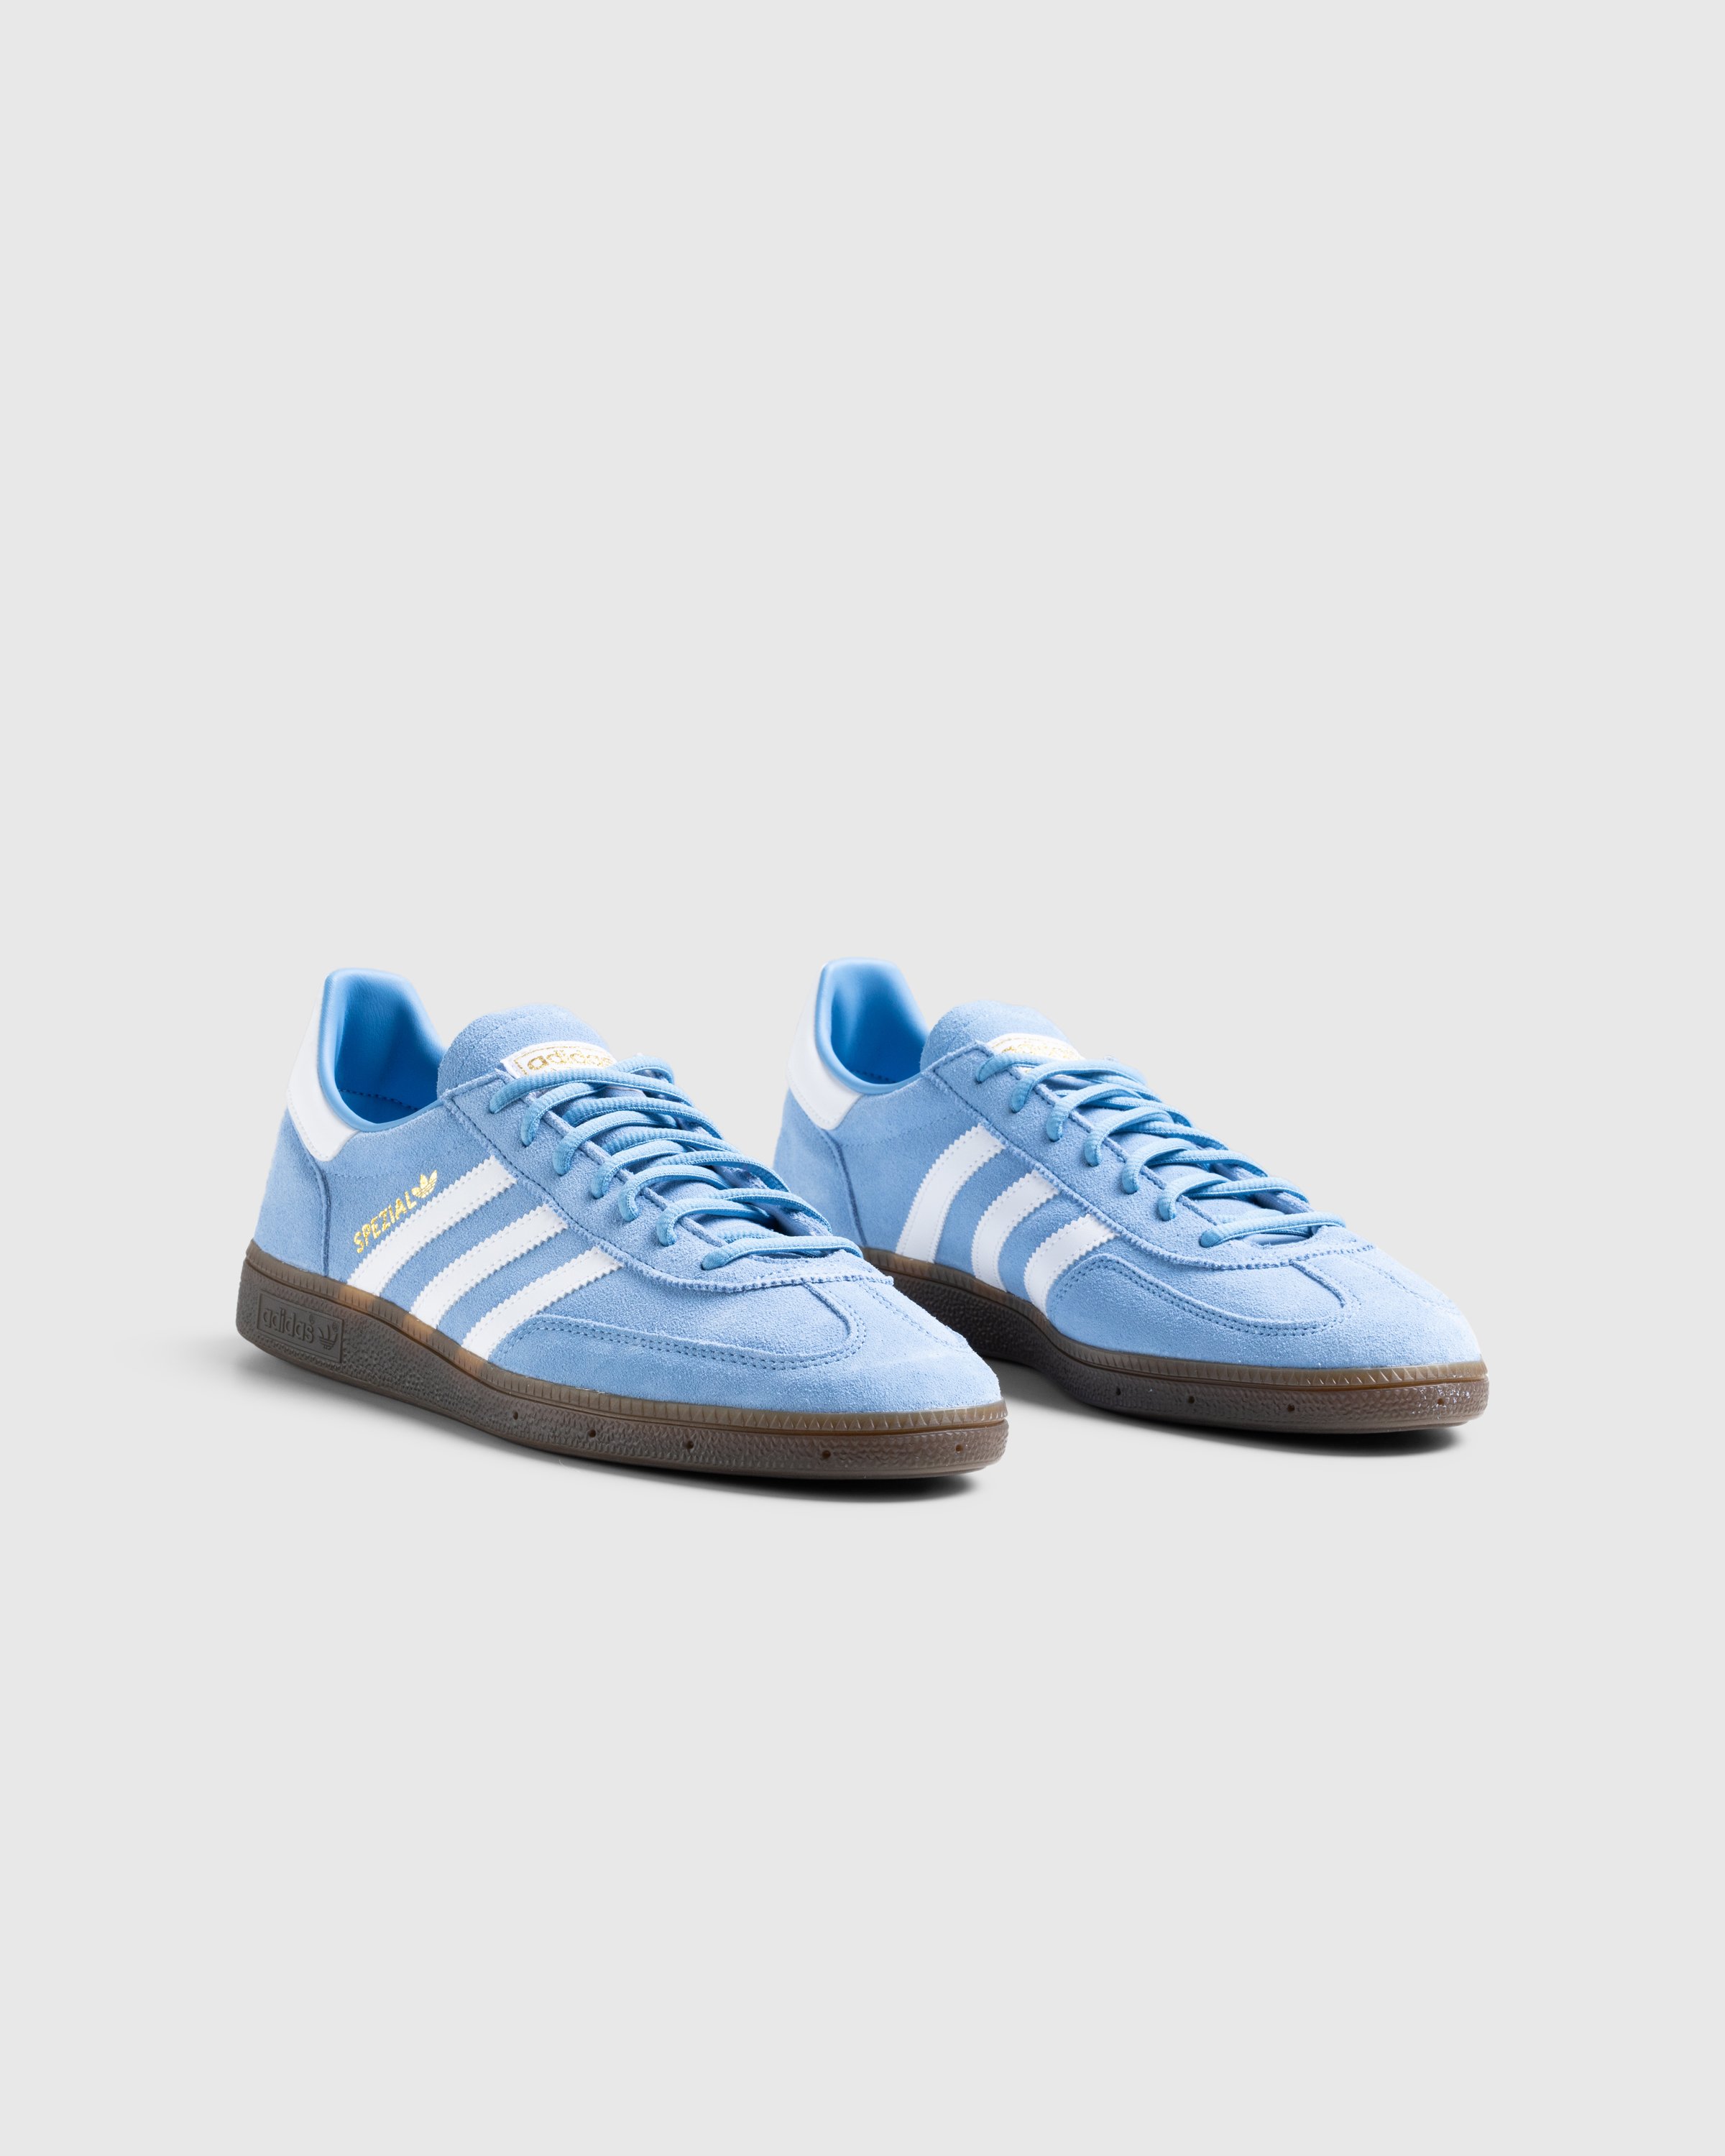 Adidas - Handball Spezial    Ltblue/Ftwwht/Gum5 - Footwear - Blue - Image 3